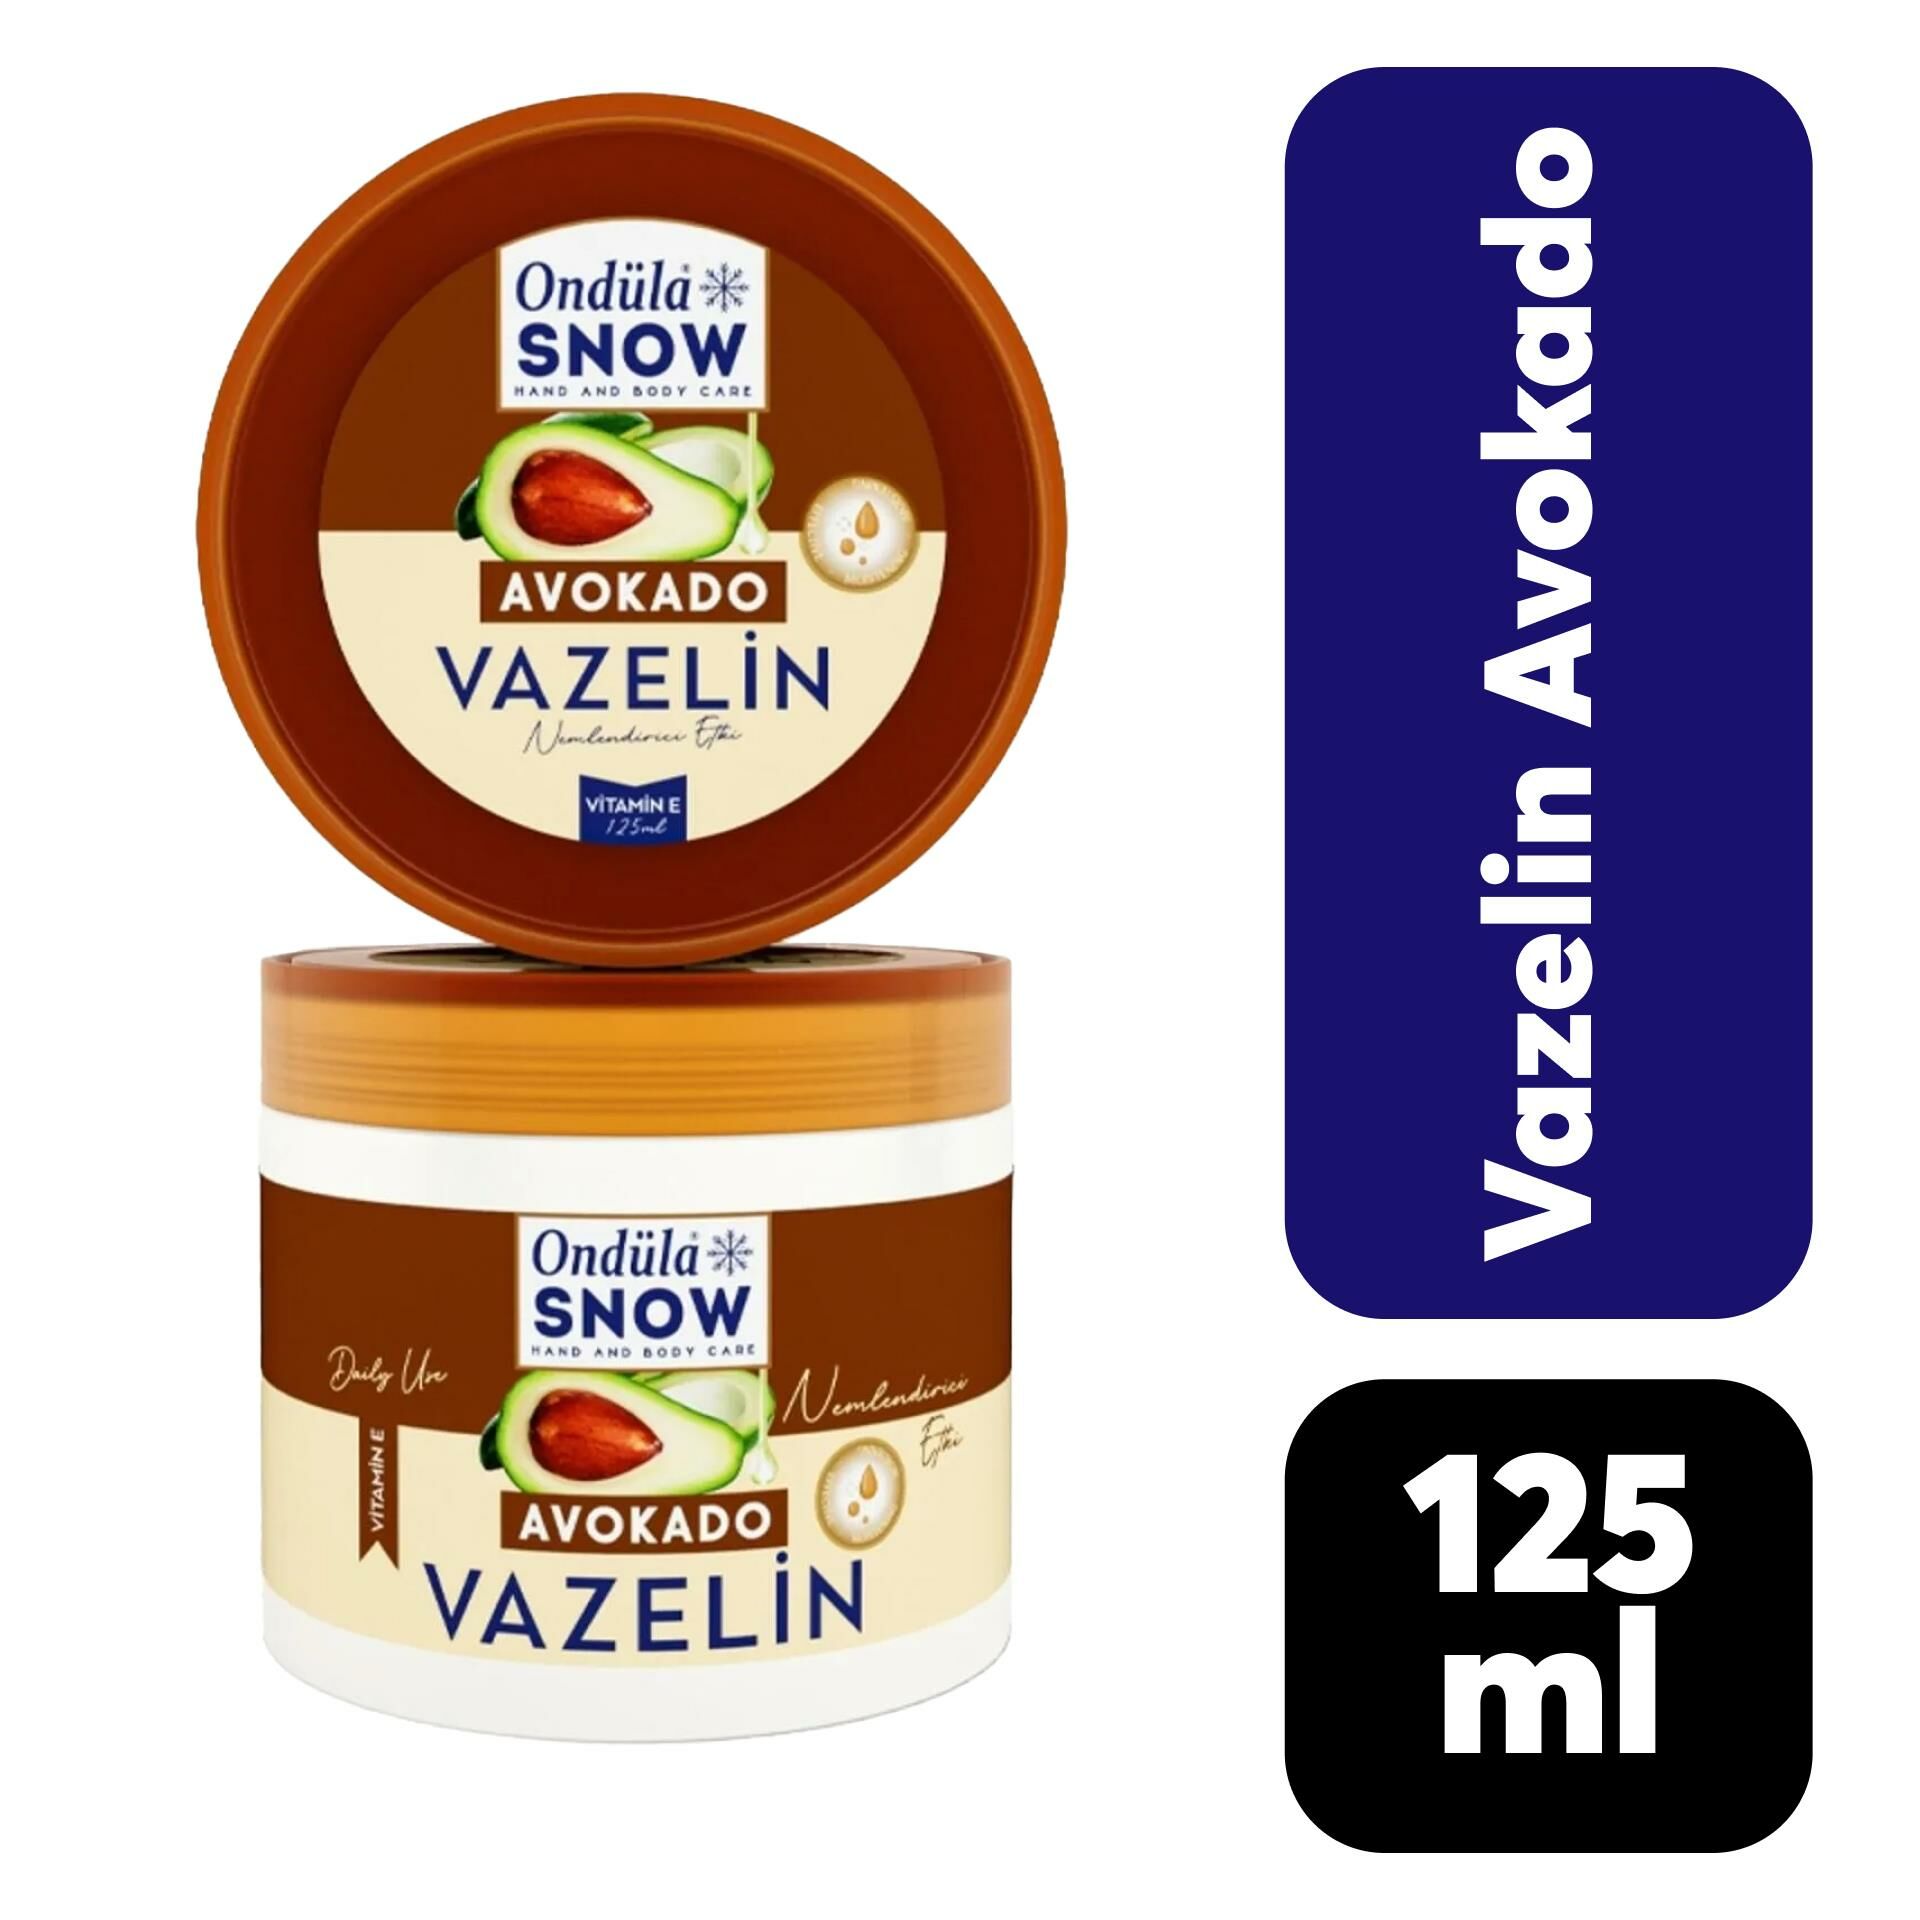 Ondüla Snow Vazelin 125 ml Avokado